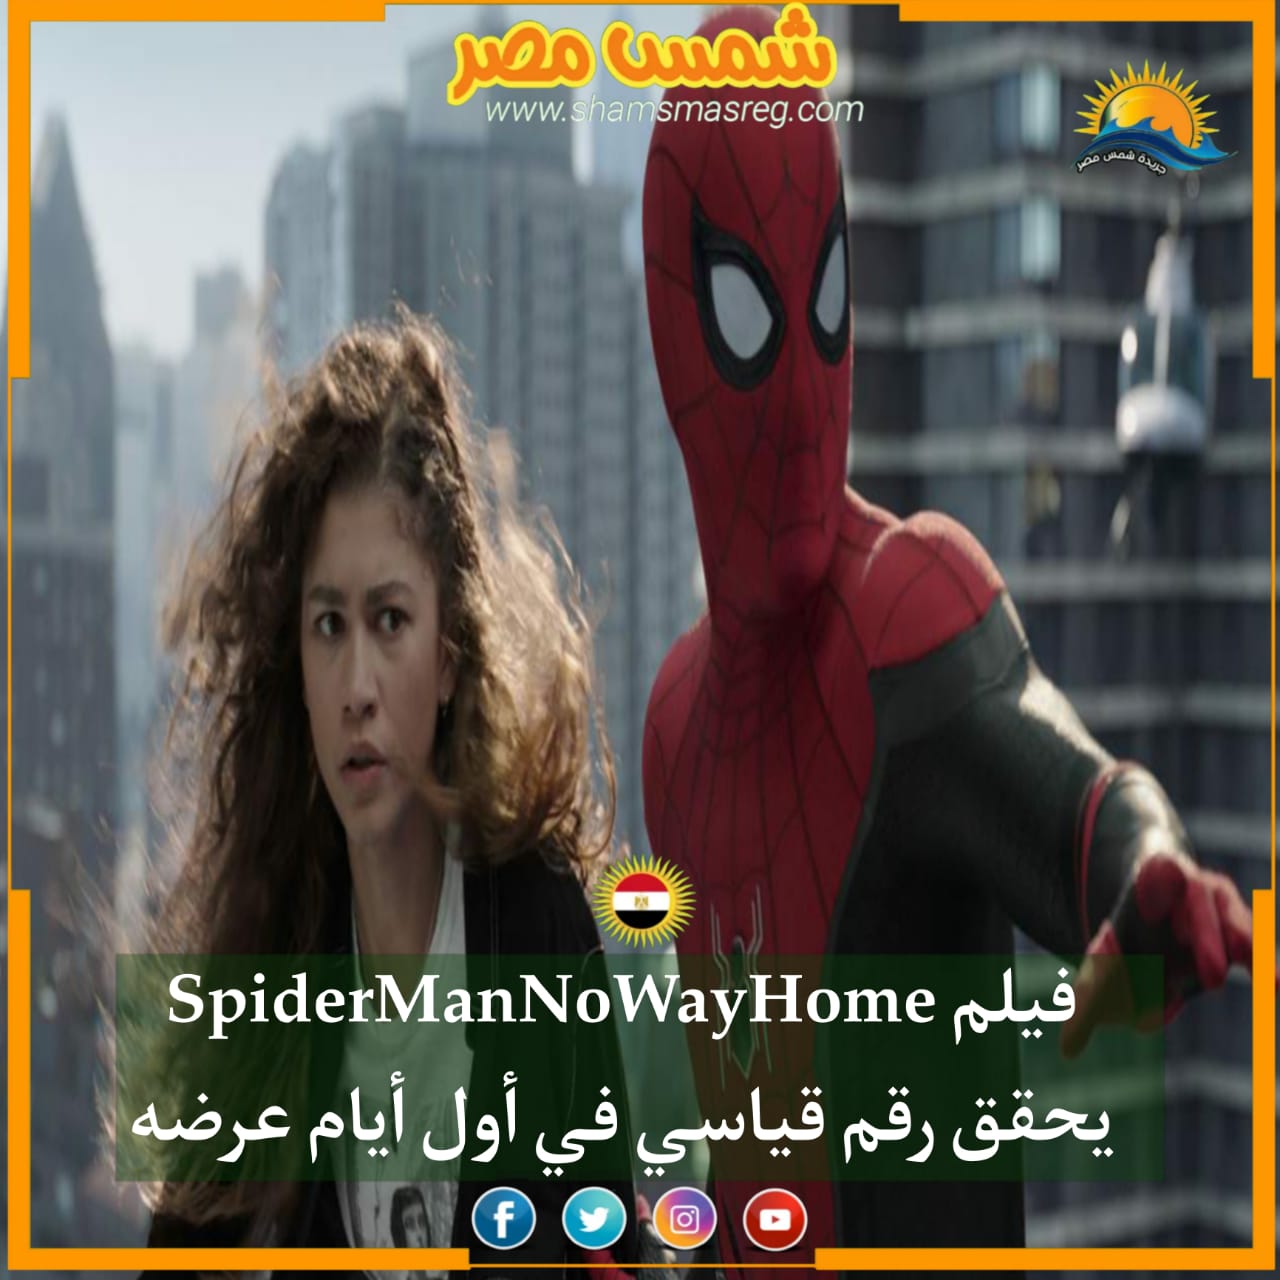 |شمس مصر|...فيلم SpiderManNoWayHome يحقق رقم قياسي في أول أيام عرضه